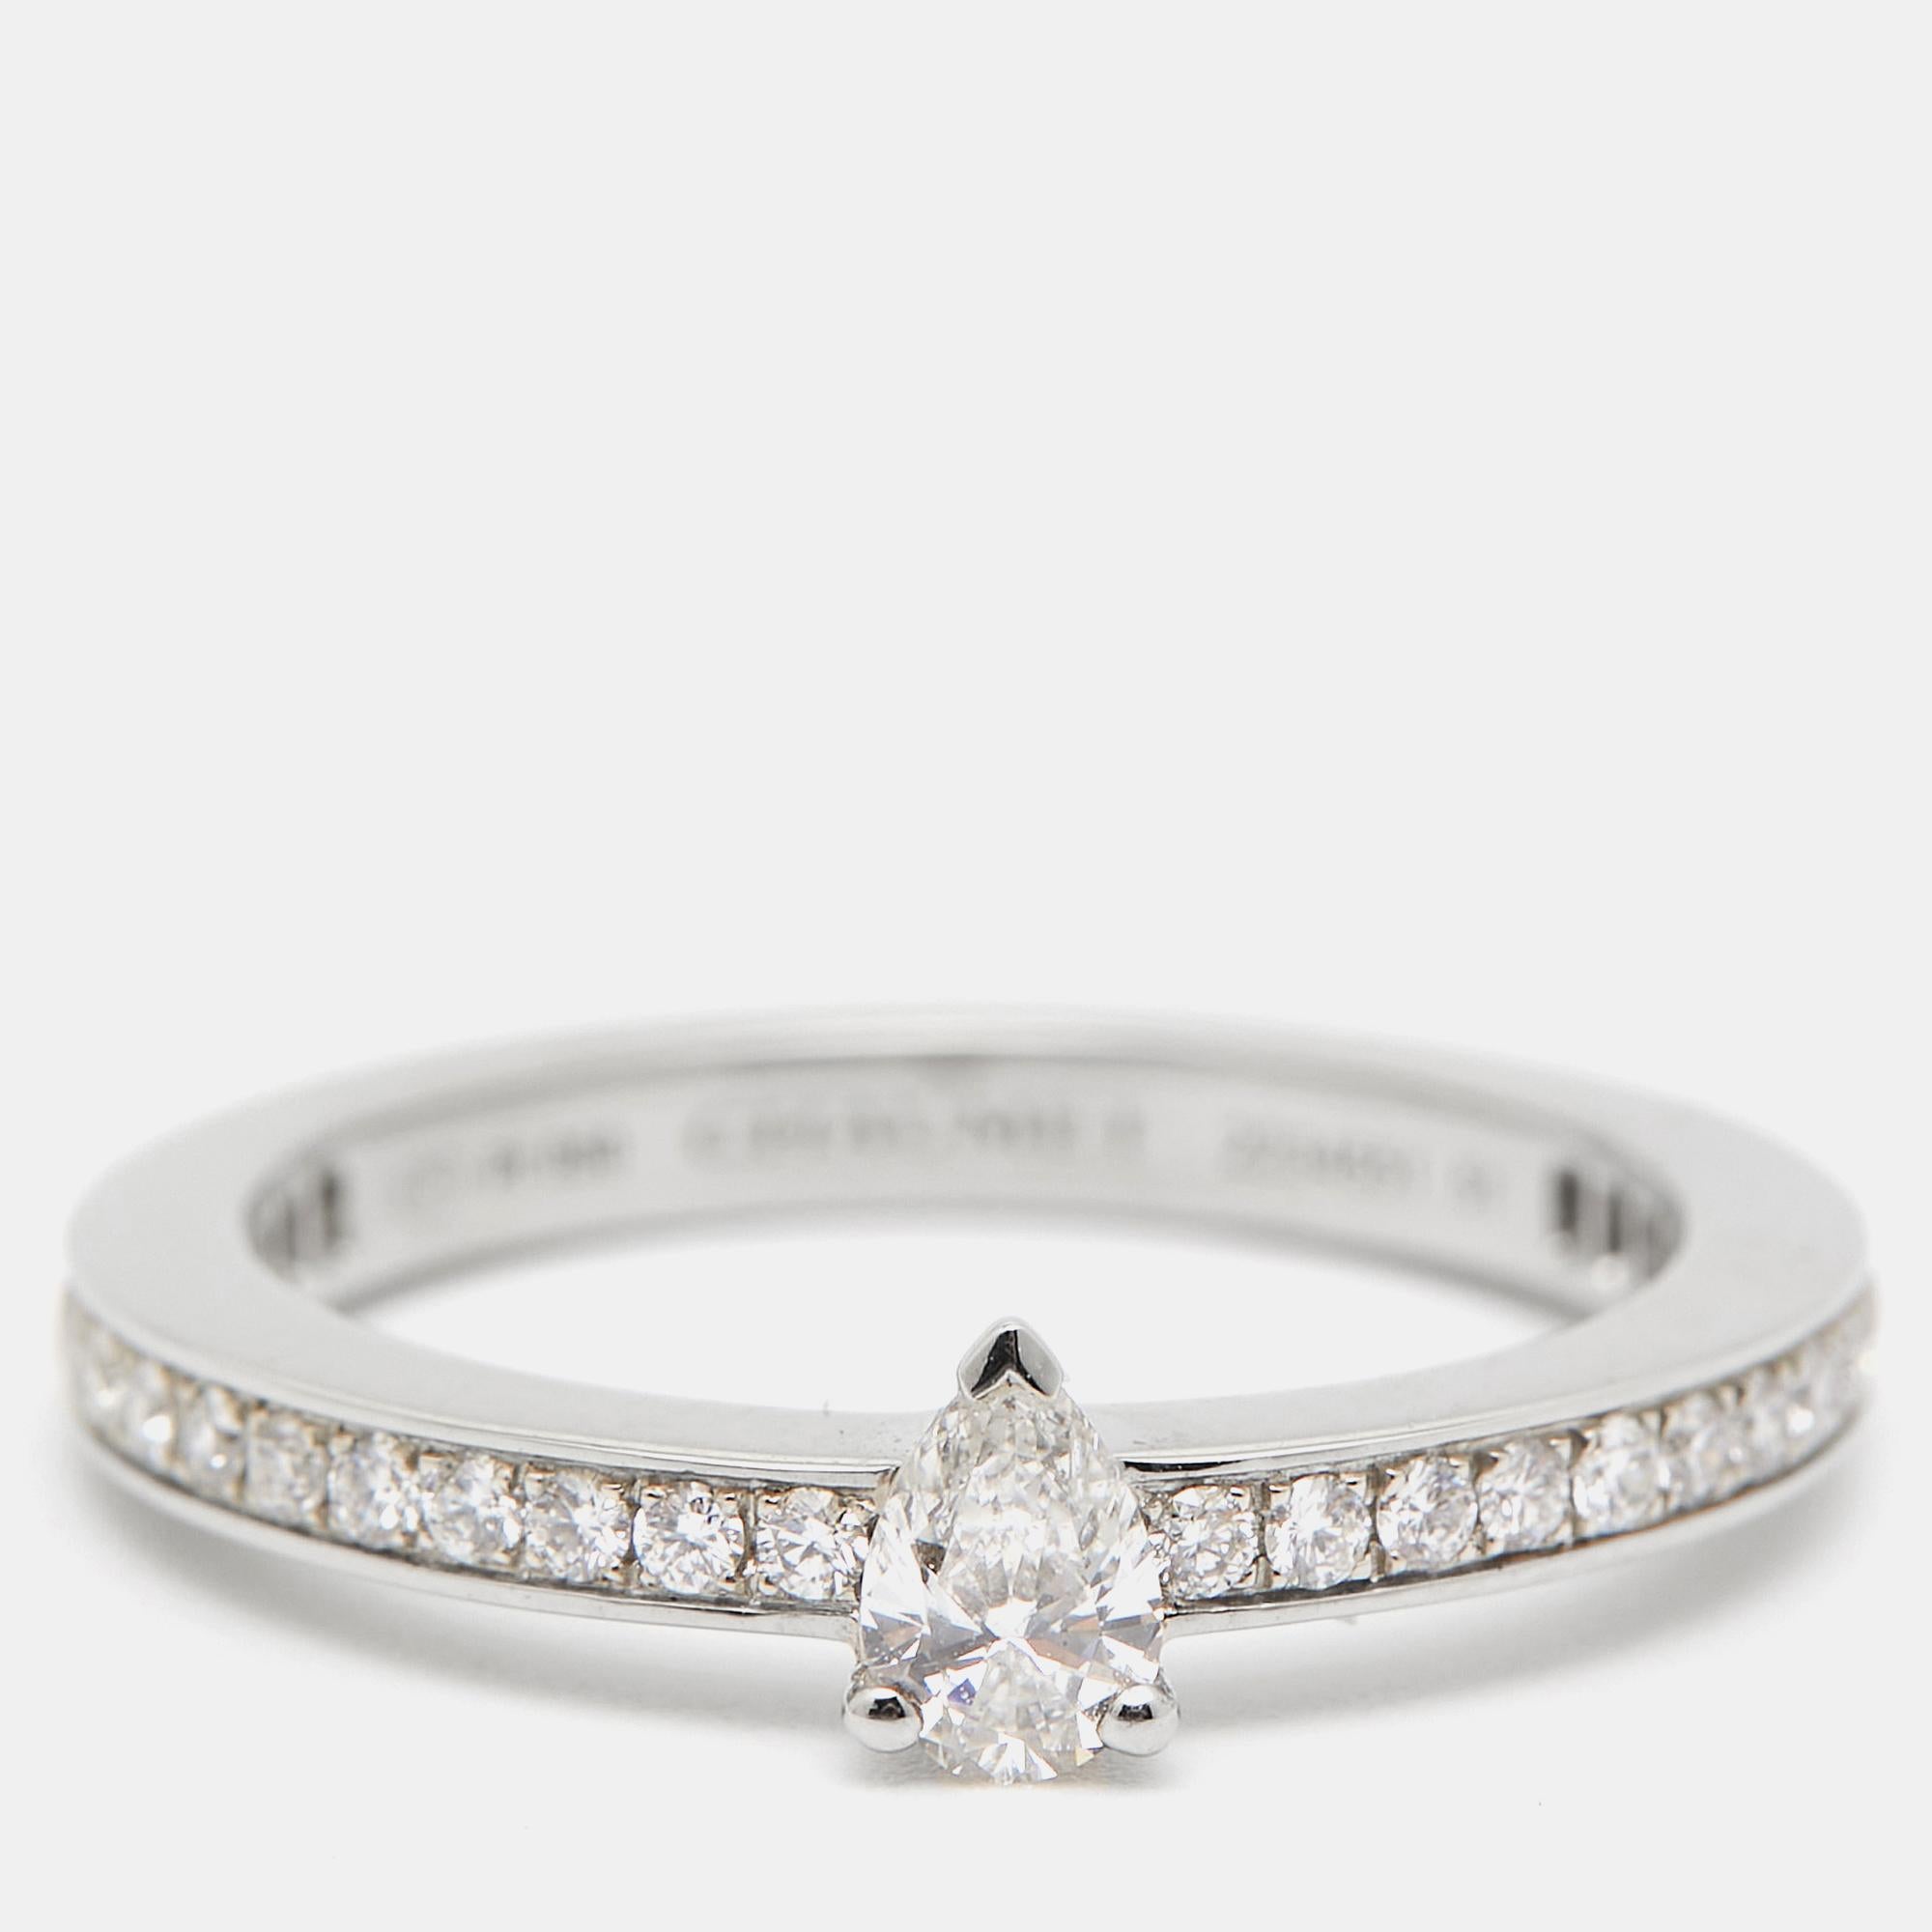 Chaumet Triomphe de Chaumet Diamond Platinum Ring Size 51 For Sale 1